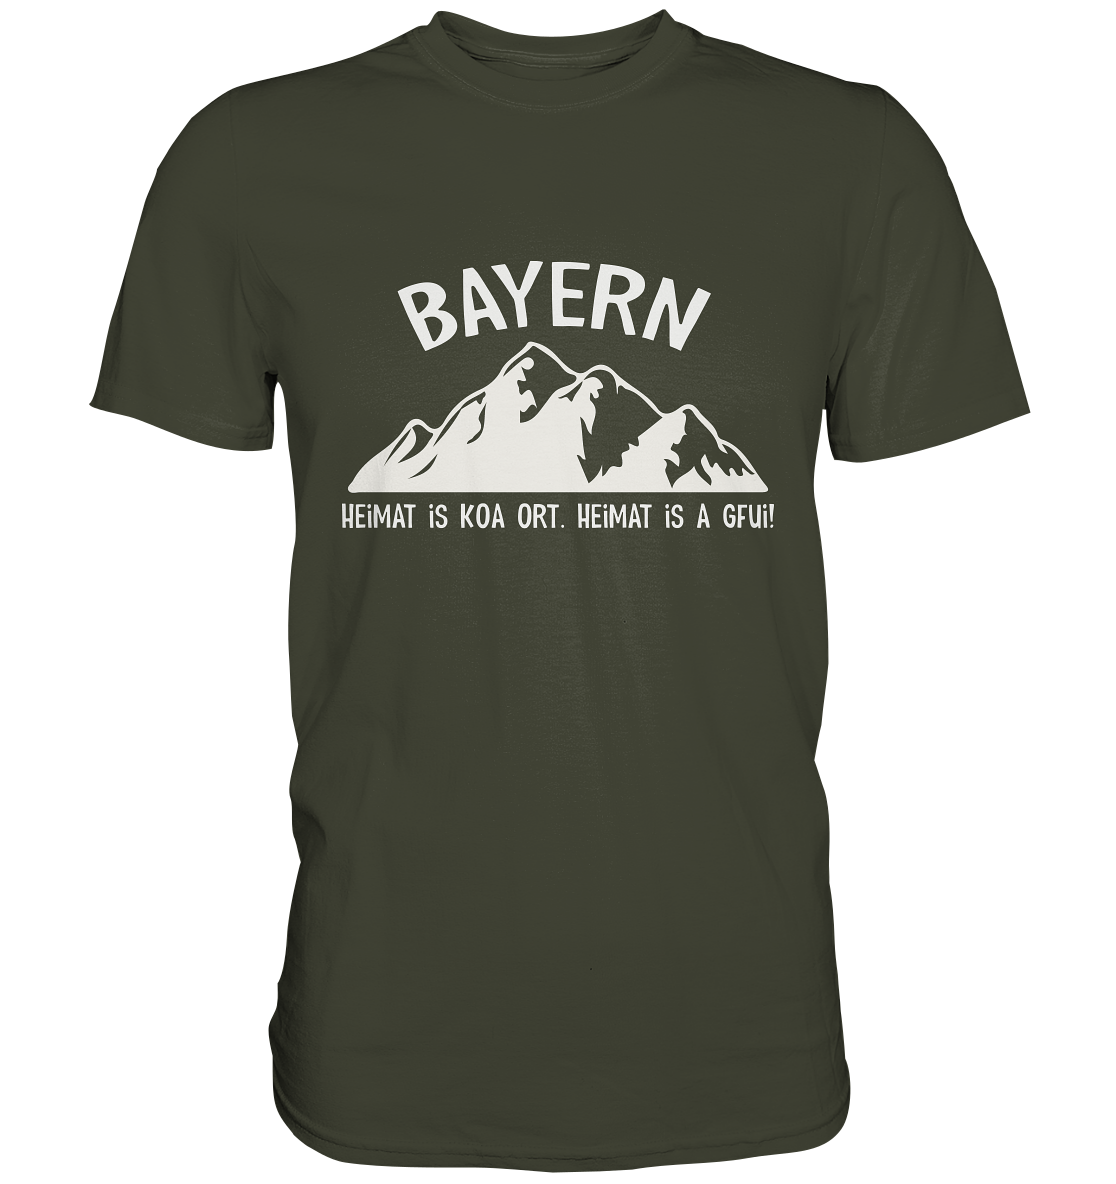 Bayern. Heimat is koa Ort. Heimat is a Gfui. -  Premium Shirt